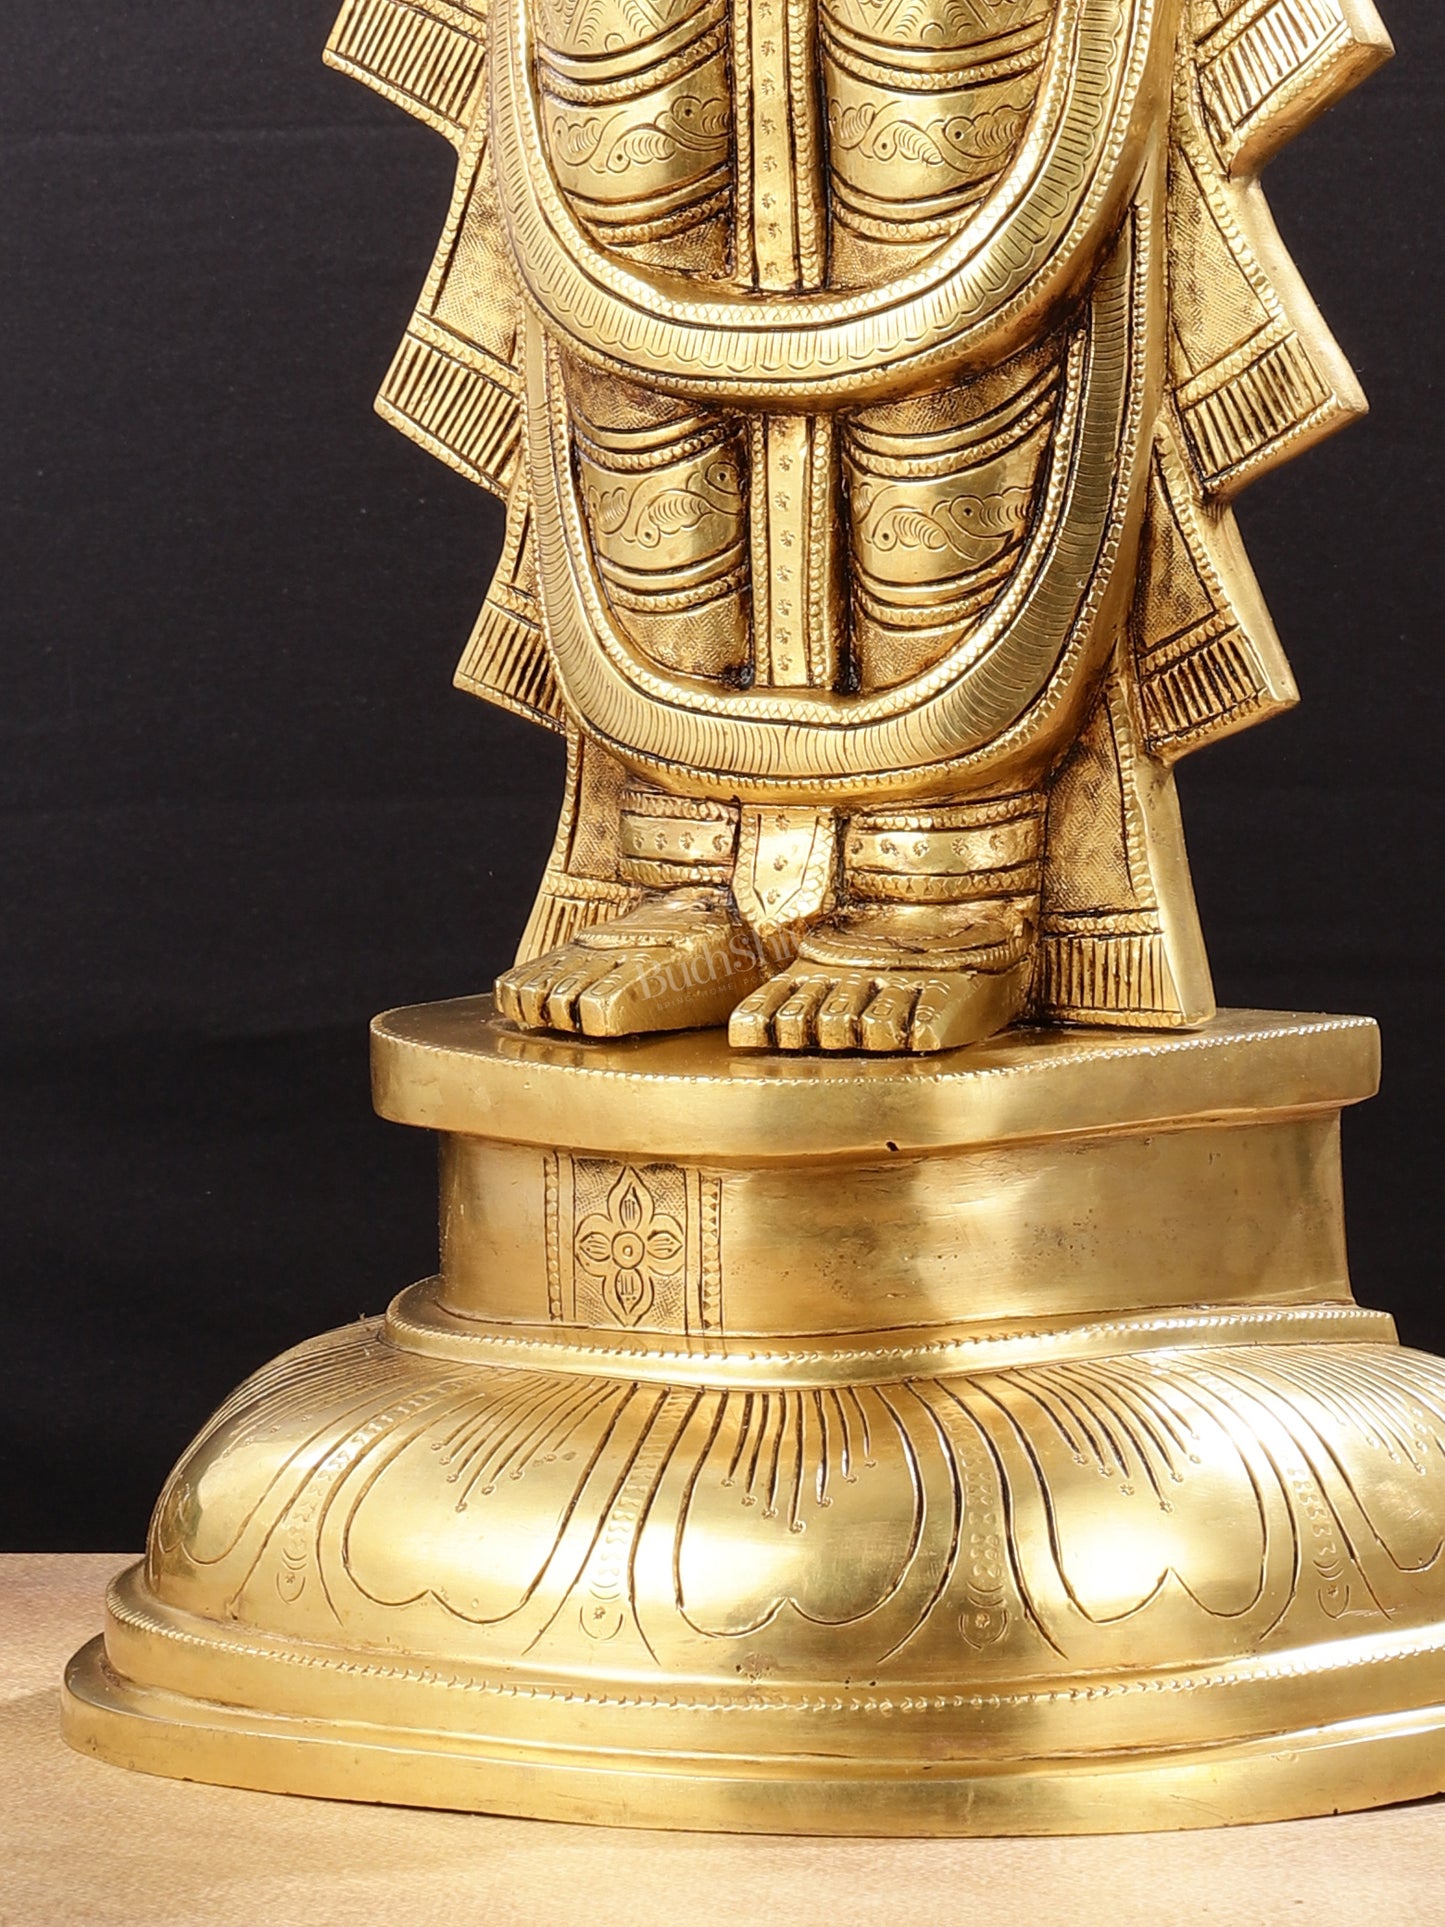 Brass Superfine Tirupati Balaji Statue - 30"